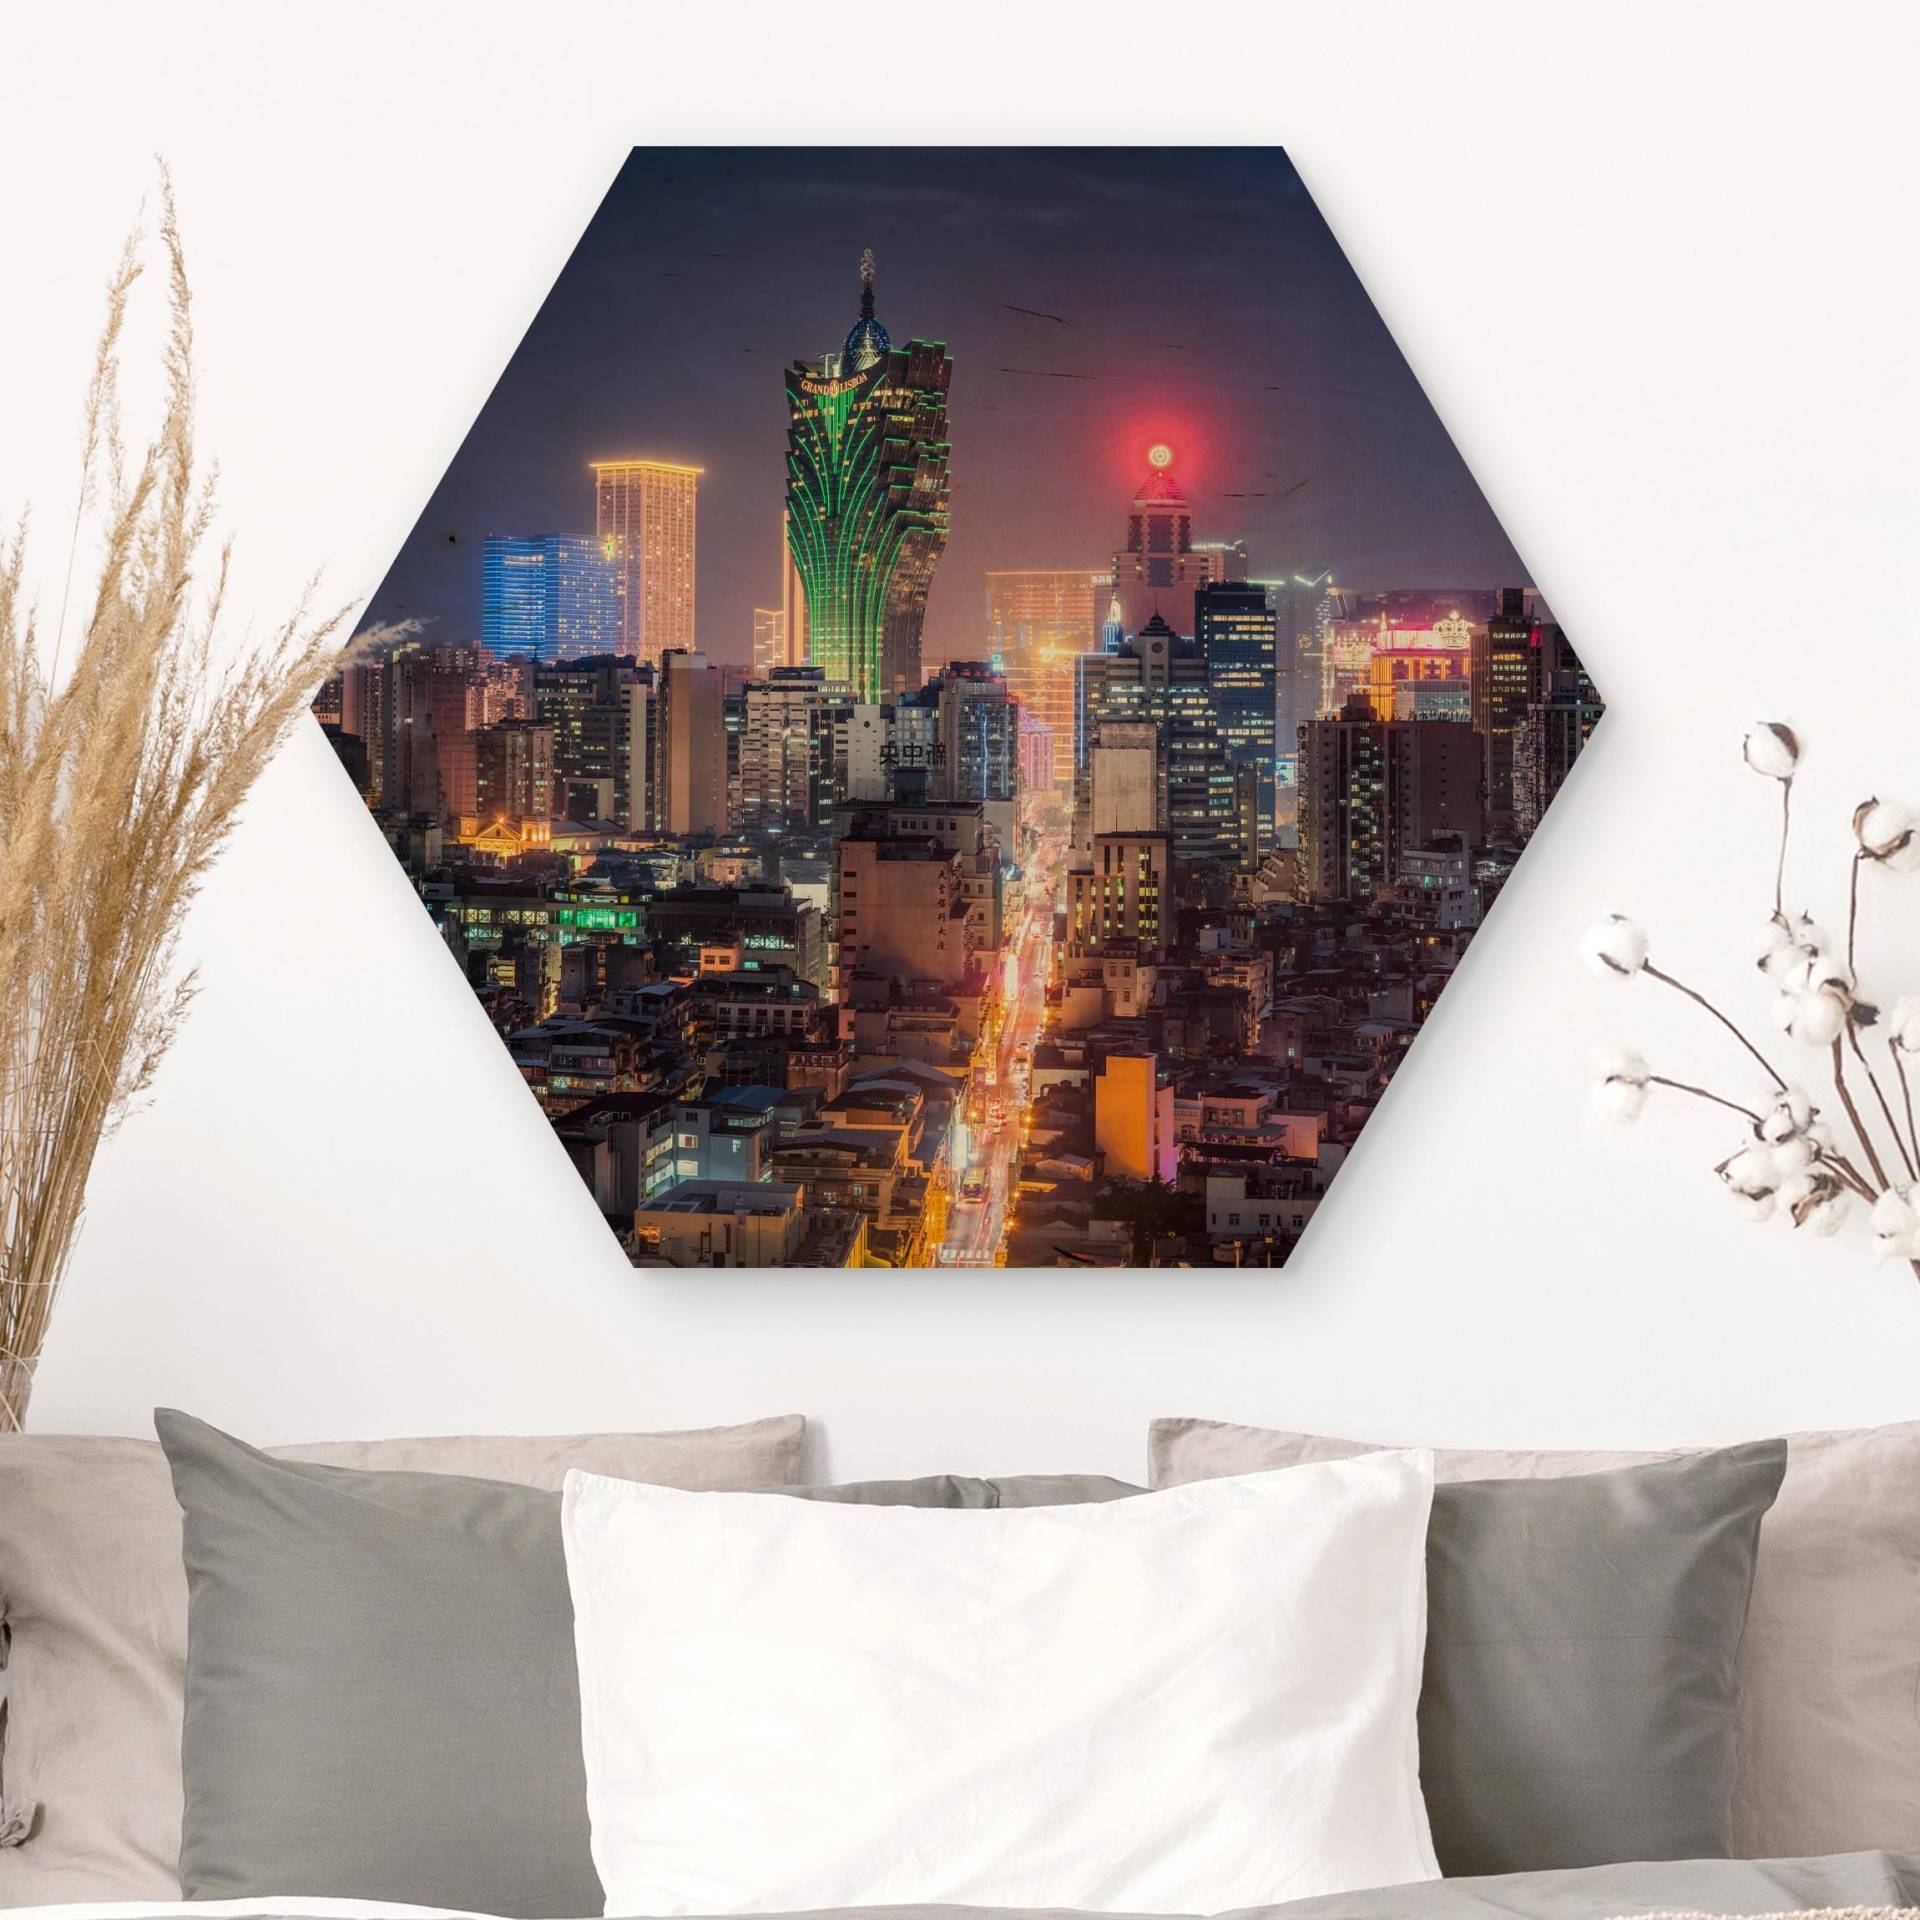 Hexagon-Holzbild Nachtlichter von Macau von Klebefieber